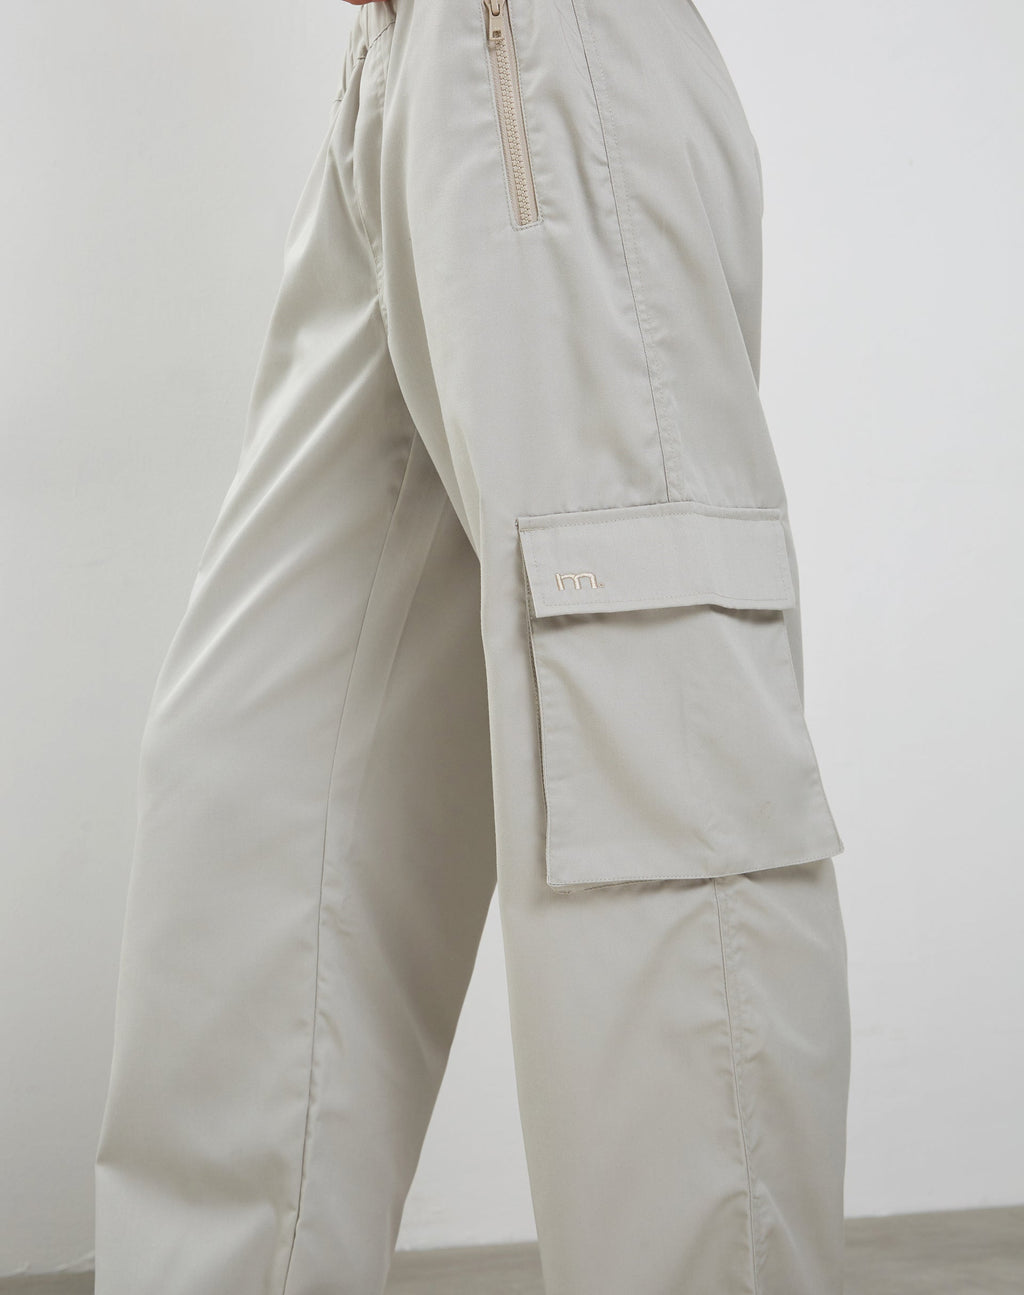 Oriells Cargo Trouser in Pearl Grey